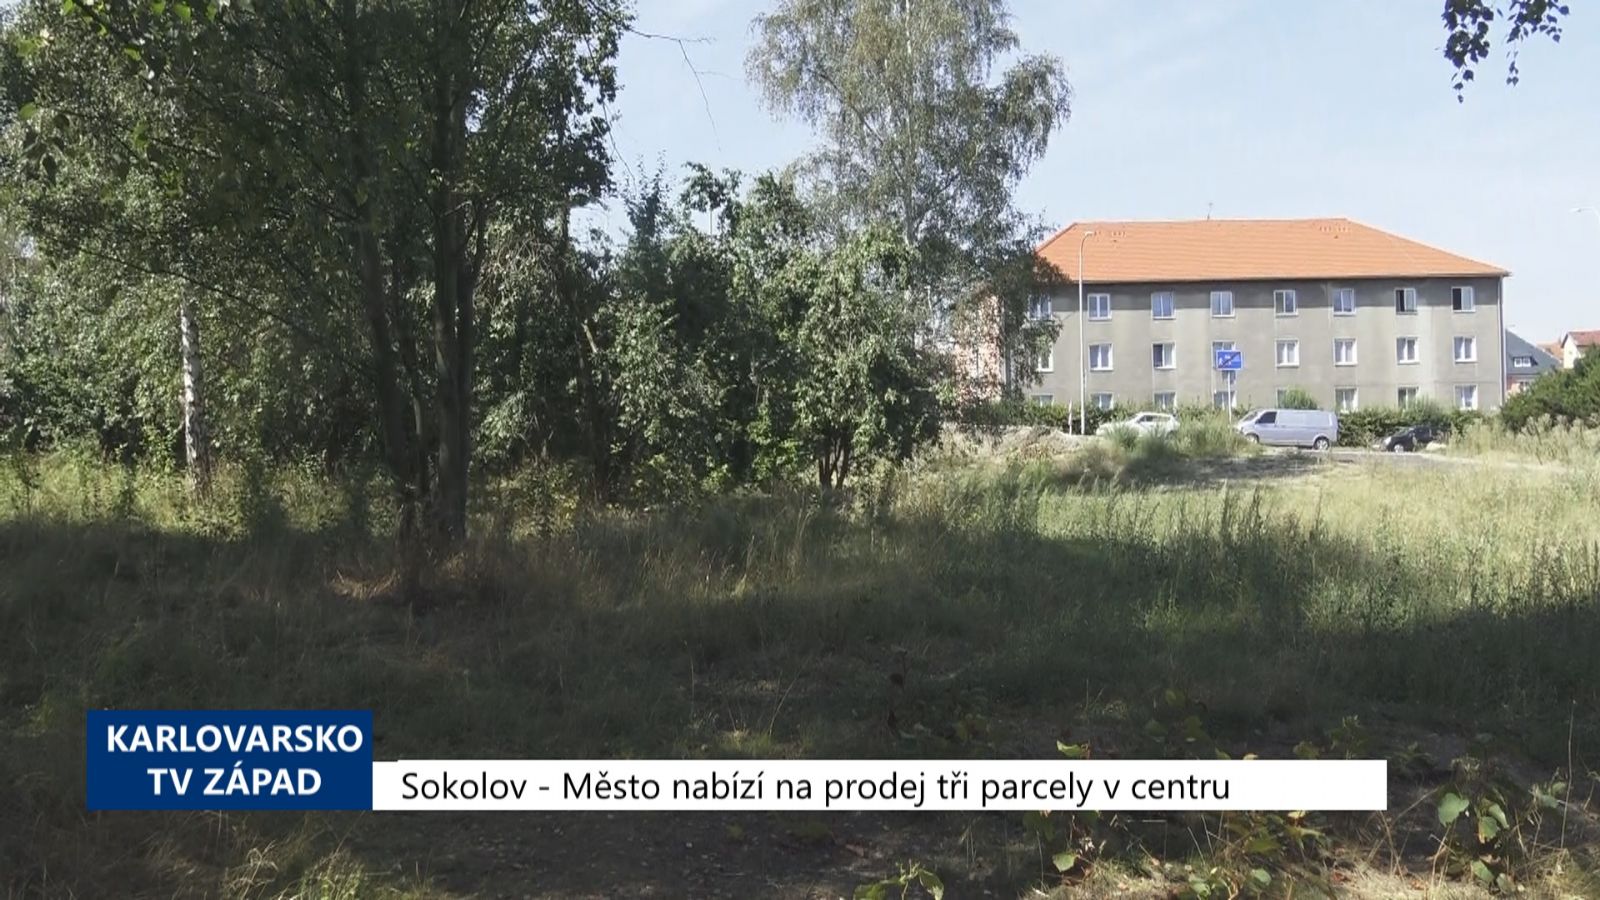 Sokolov: Město nabízí na prodej tři parcely v centru (TV Západ)